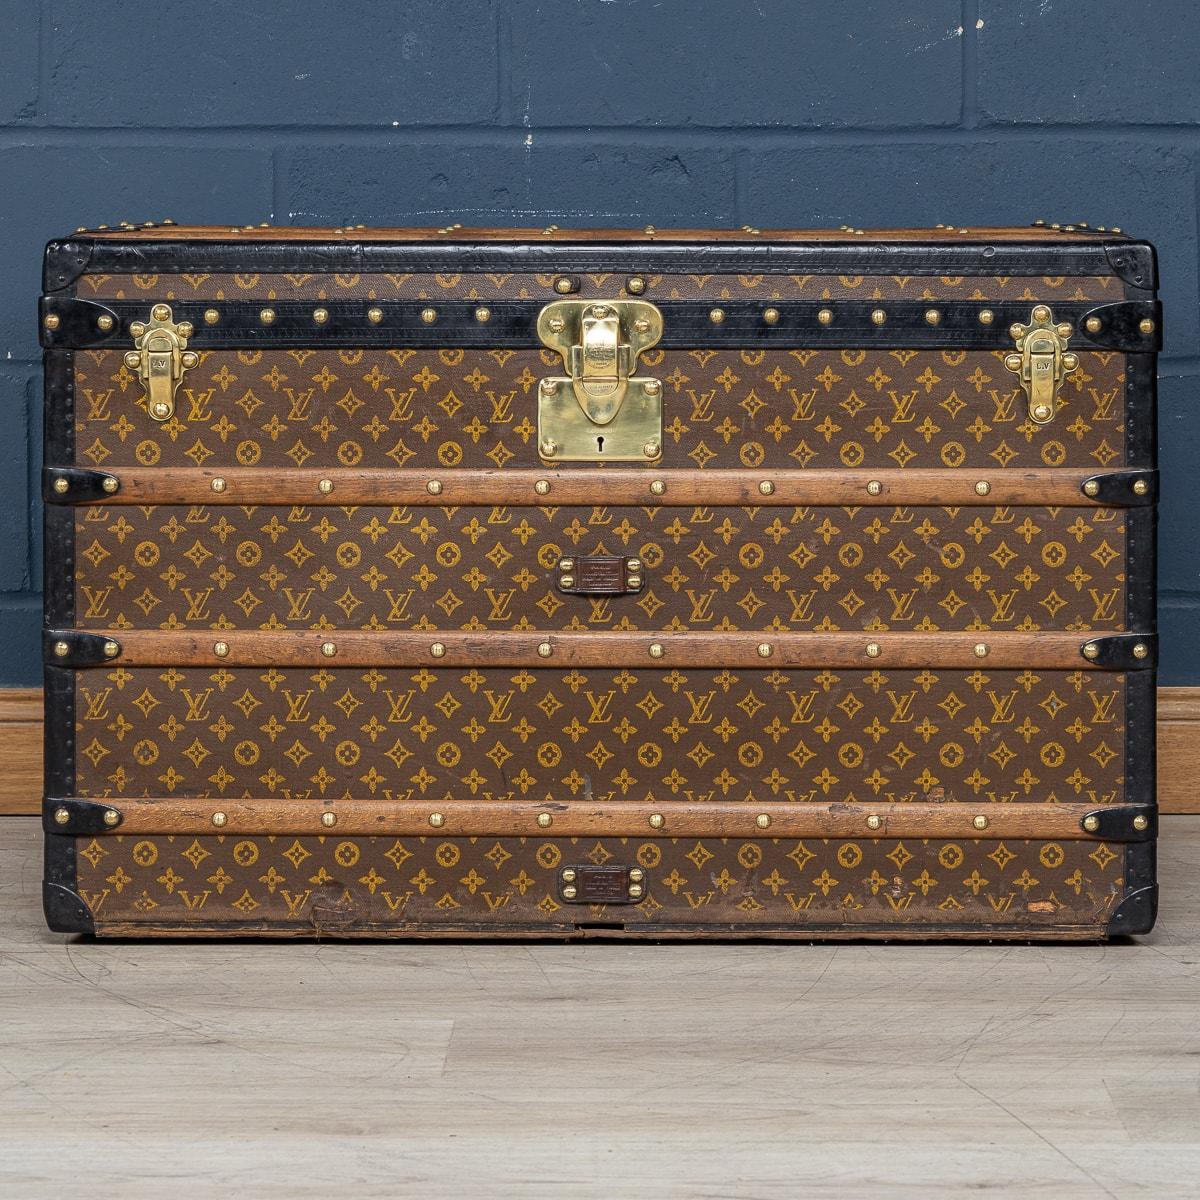 Um die Wende vom 19. zum 20. Jahrhundert hatte sich Louis Vuitton als Marktführer in der Kofferherstellung etabliert und musste seine inzwischen berühmte Marke von den Nachahmern und Konkurrenten abheben. Sie beschlossen, ein Logo, ein Monogramm, zu